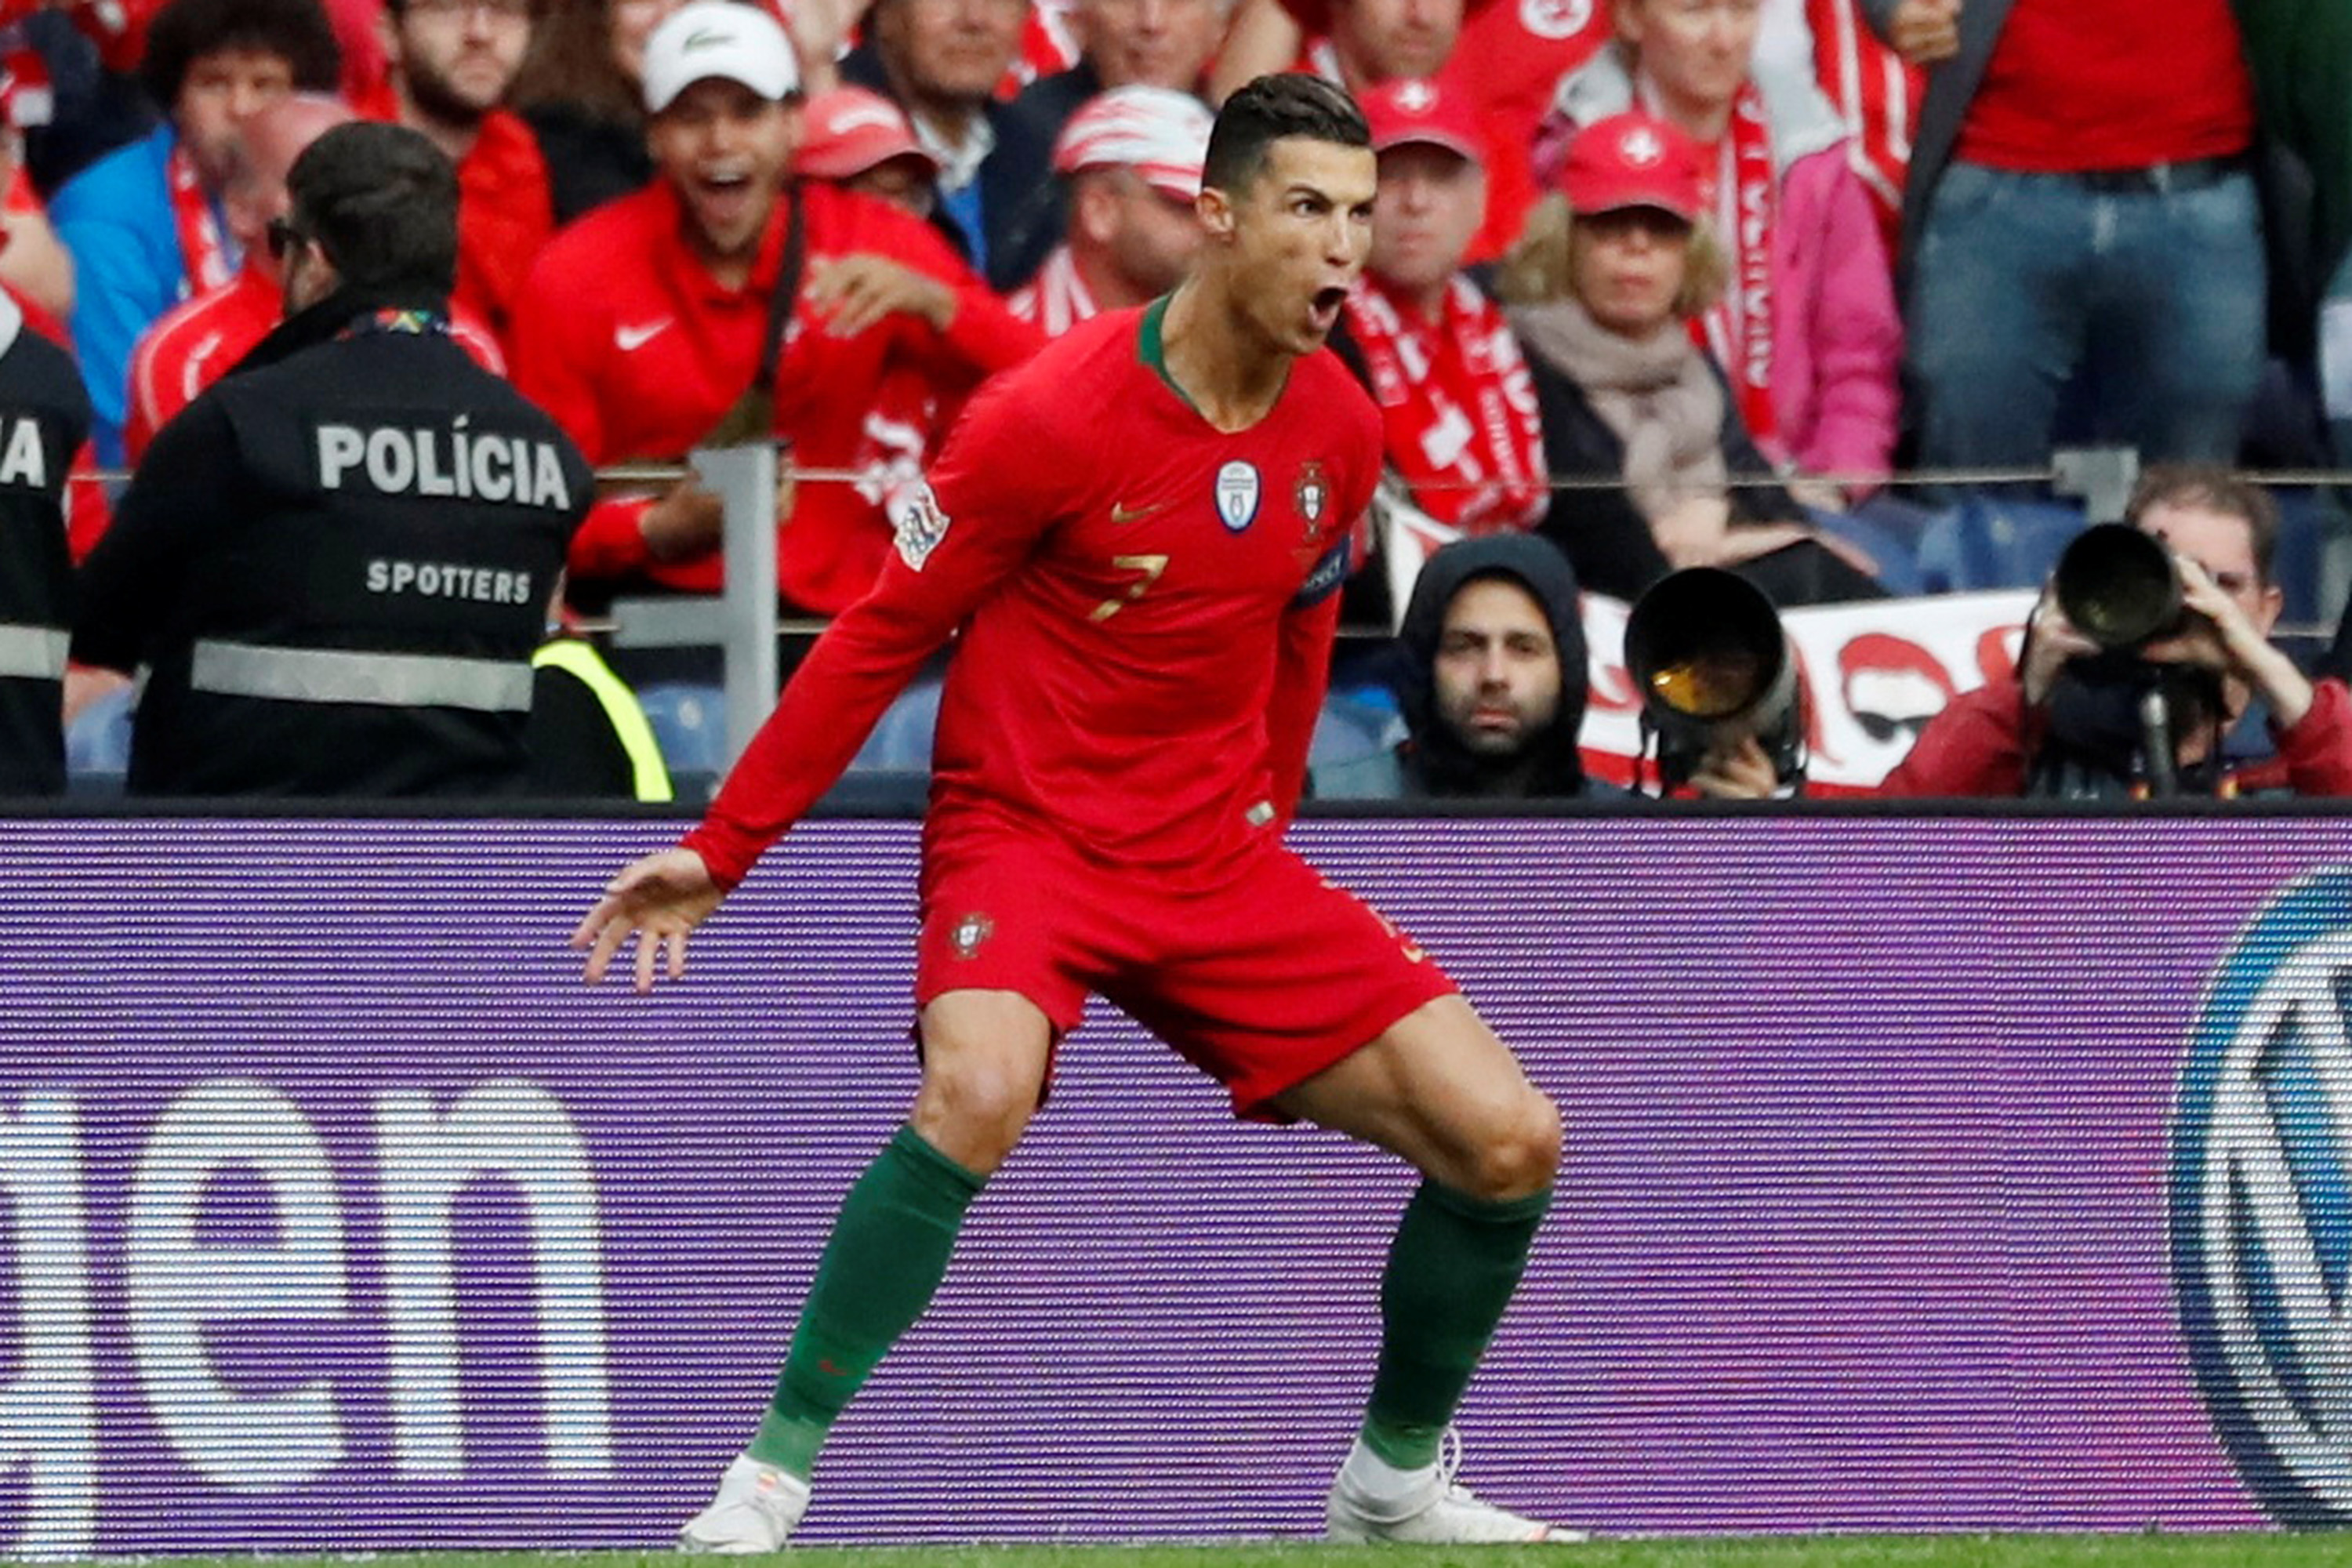 Liga Portugal - As emoções seguem ao rubro 🎢 na